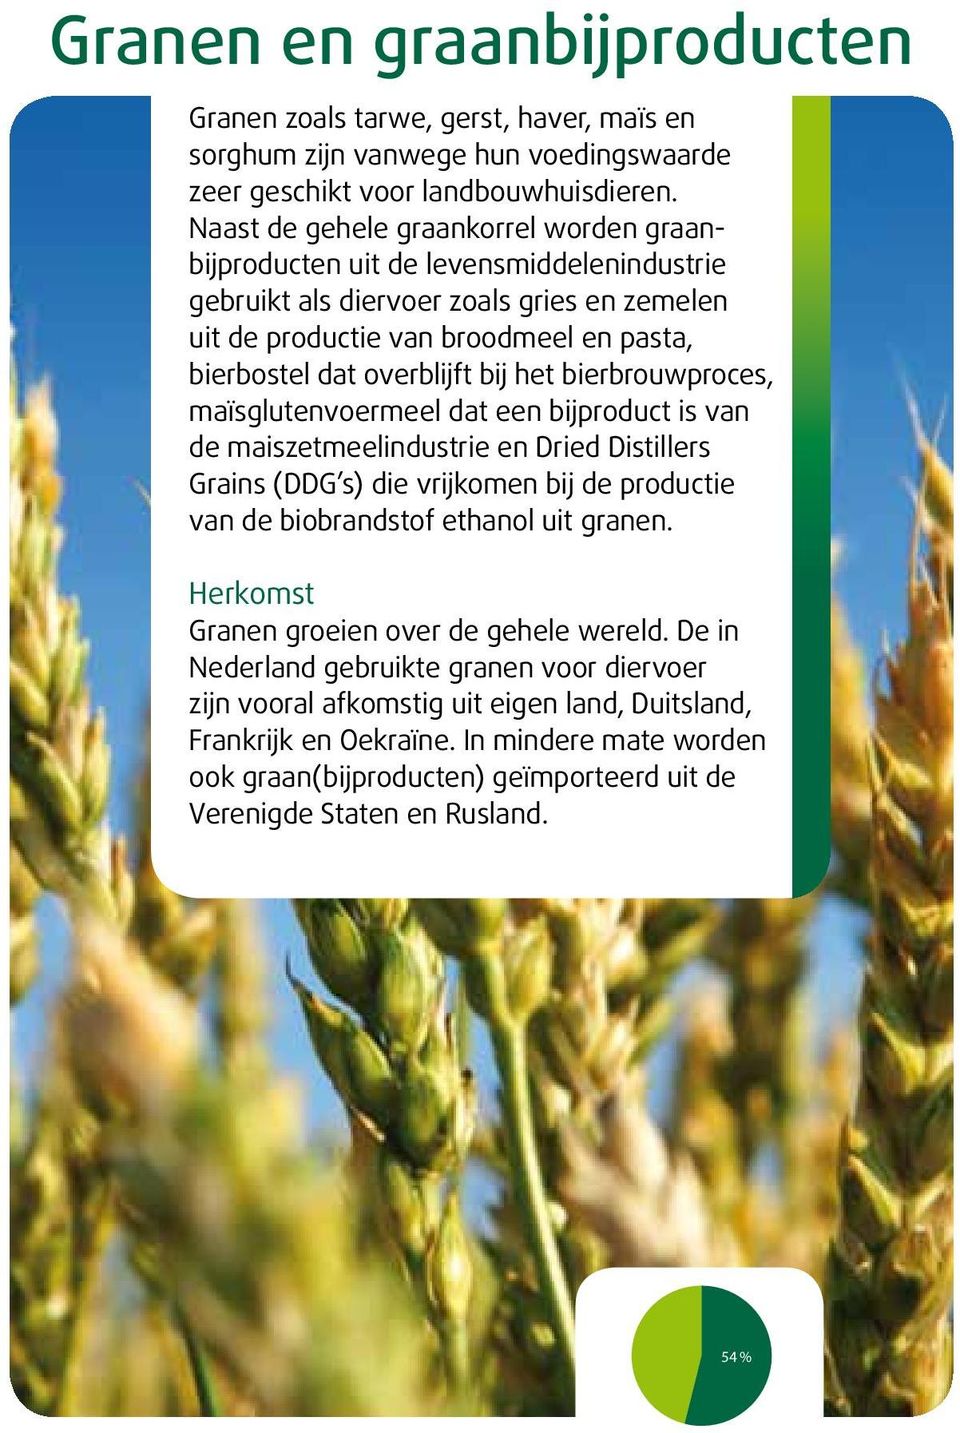 het bierbrouwproces, maïsglutenvoermeel dat een bijproduct is van de maiszetmeelindustrie en Dried Distillers Grains (DDG s) die vrijkomen bij de productie van de biobrandstof ethanol uit granen.